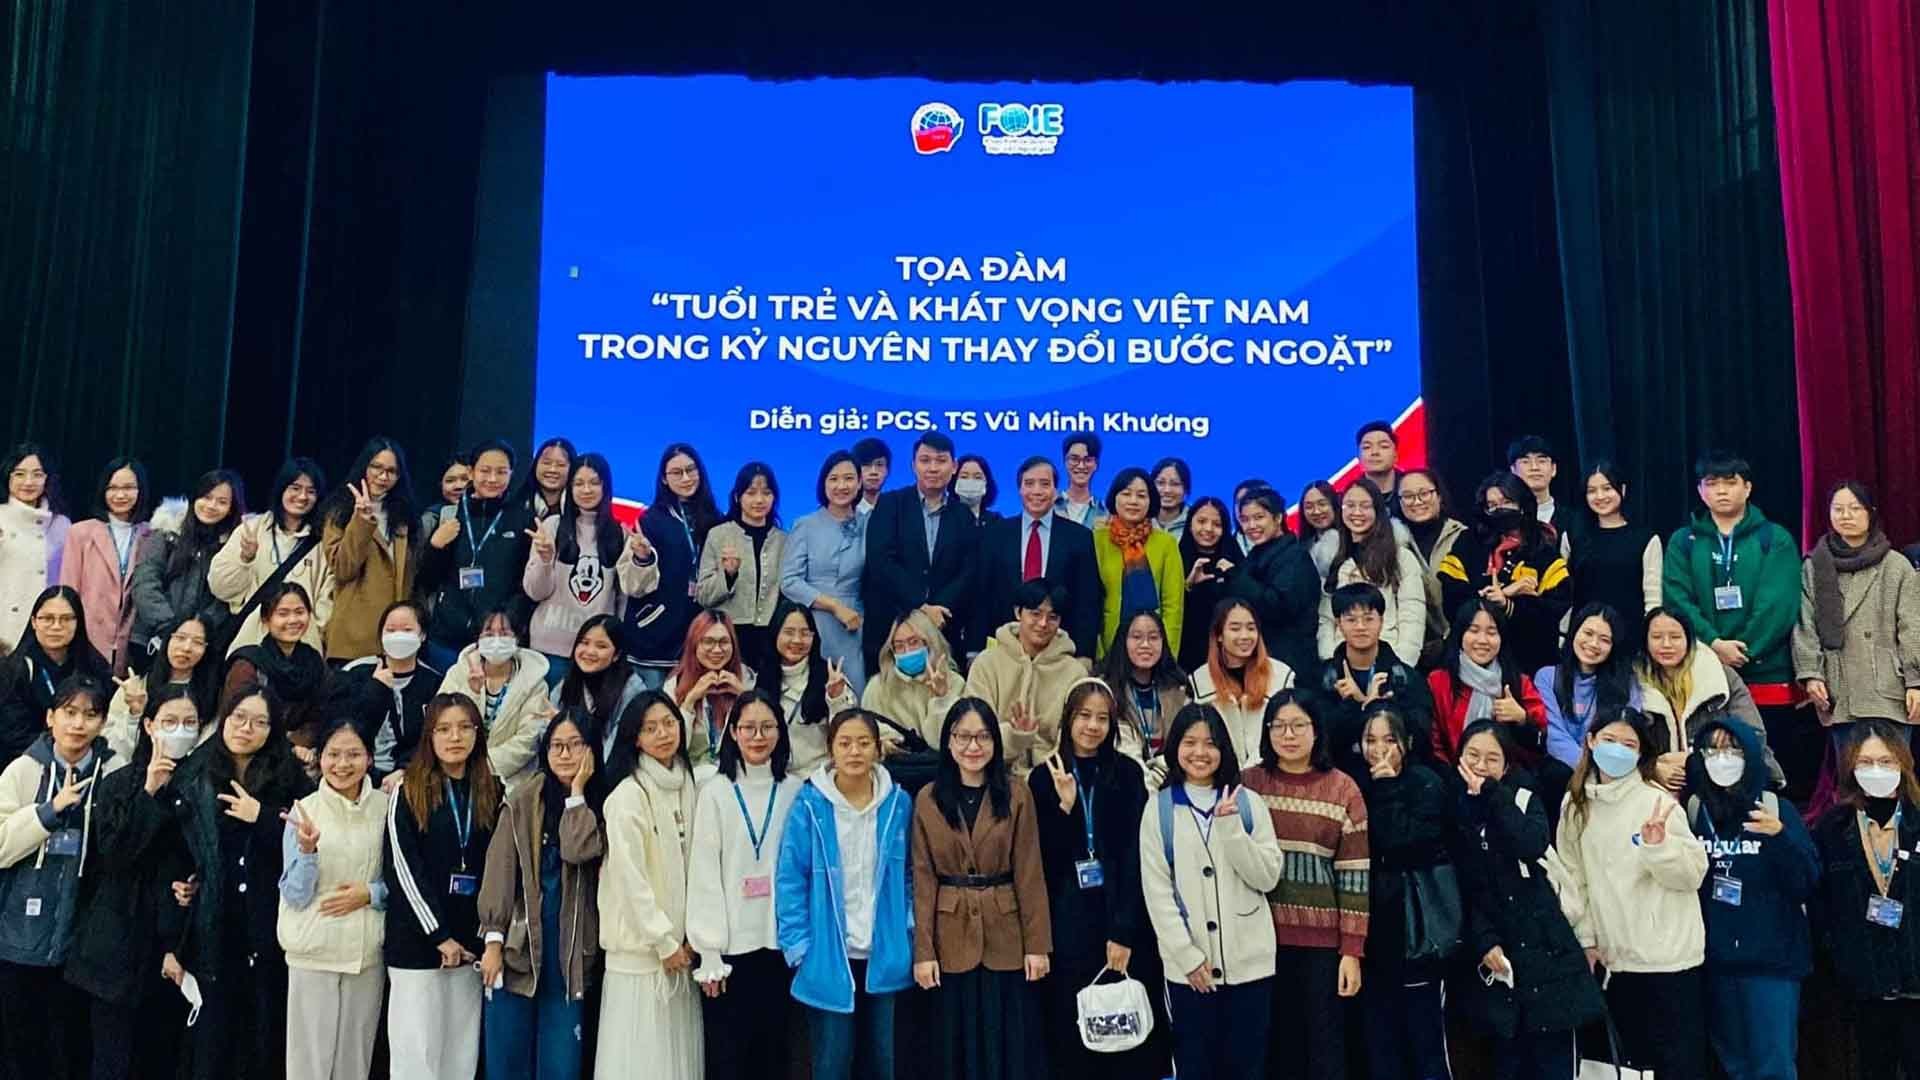 Học viện Ngoại giao tổ chức tọa đàm ‘Tuổi trẻ và khát vọng Việt Nam trong kỷ nguyên thay đổi bước ngoặt’